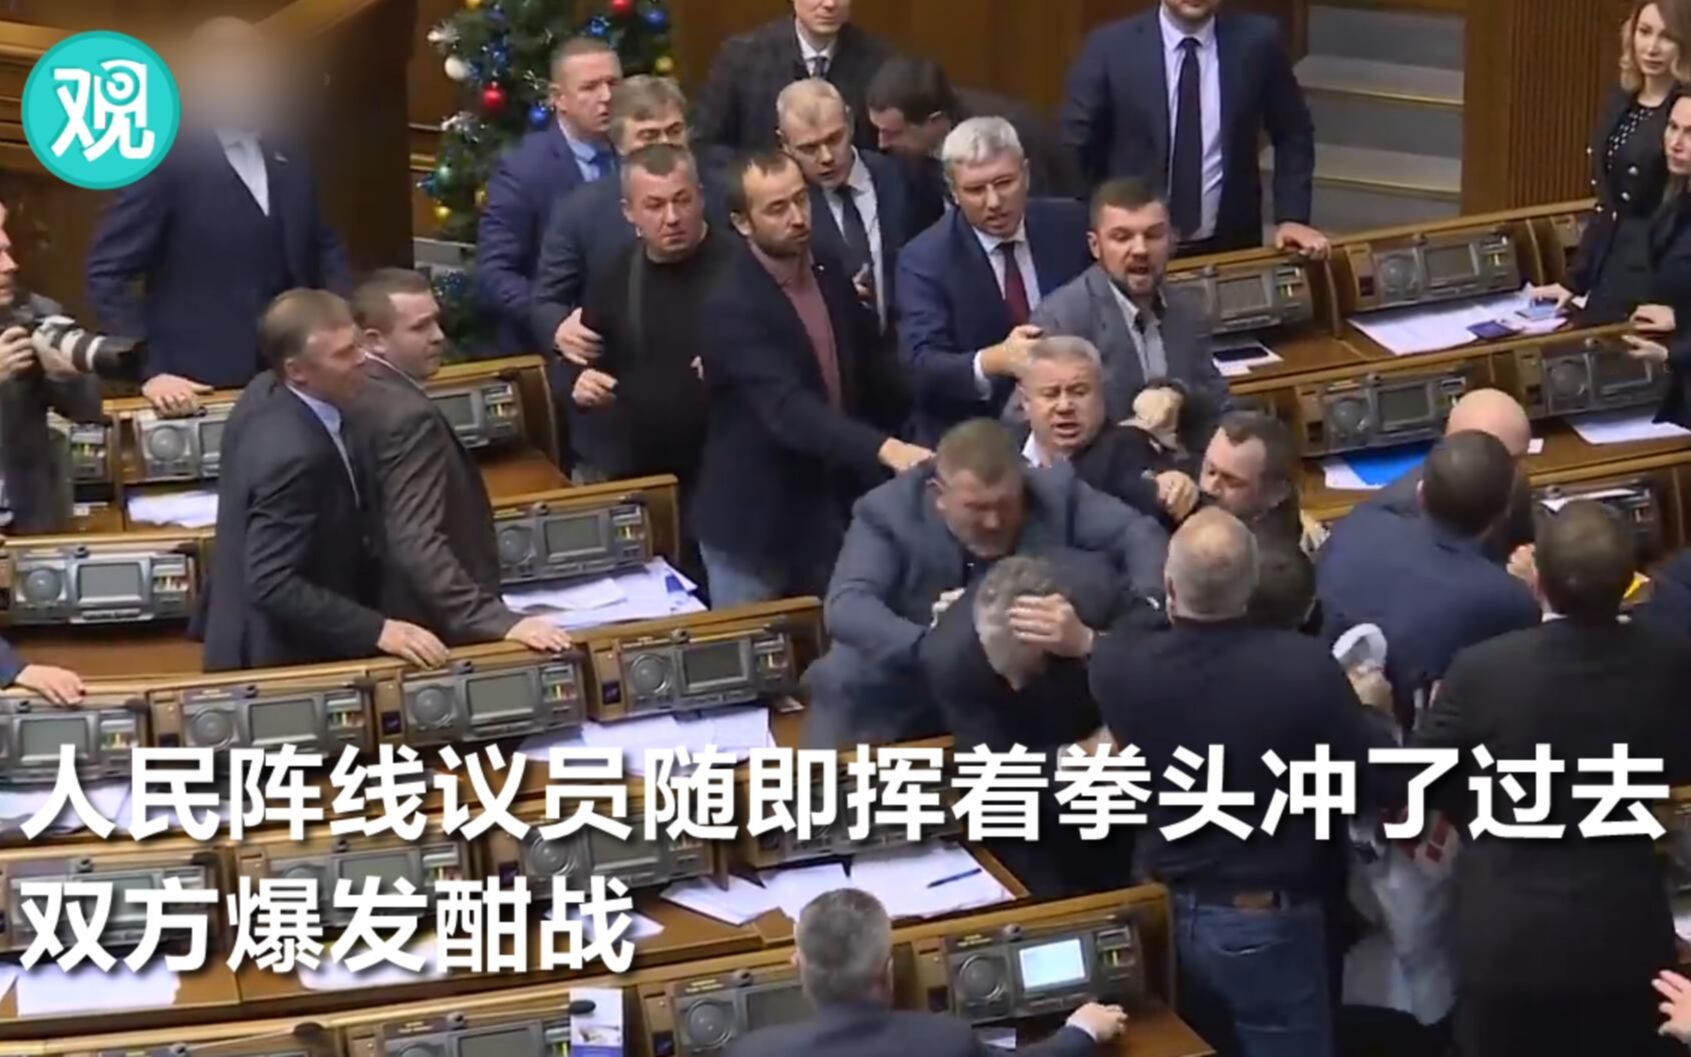 乌克兰议会稀松平常的一天:又打架了